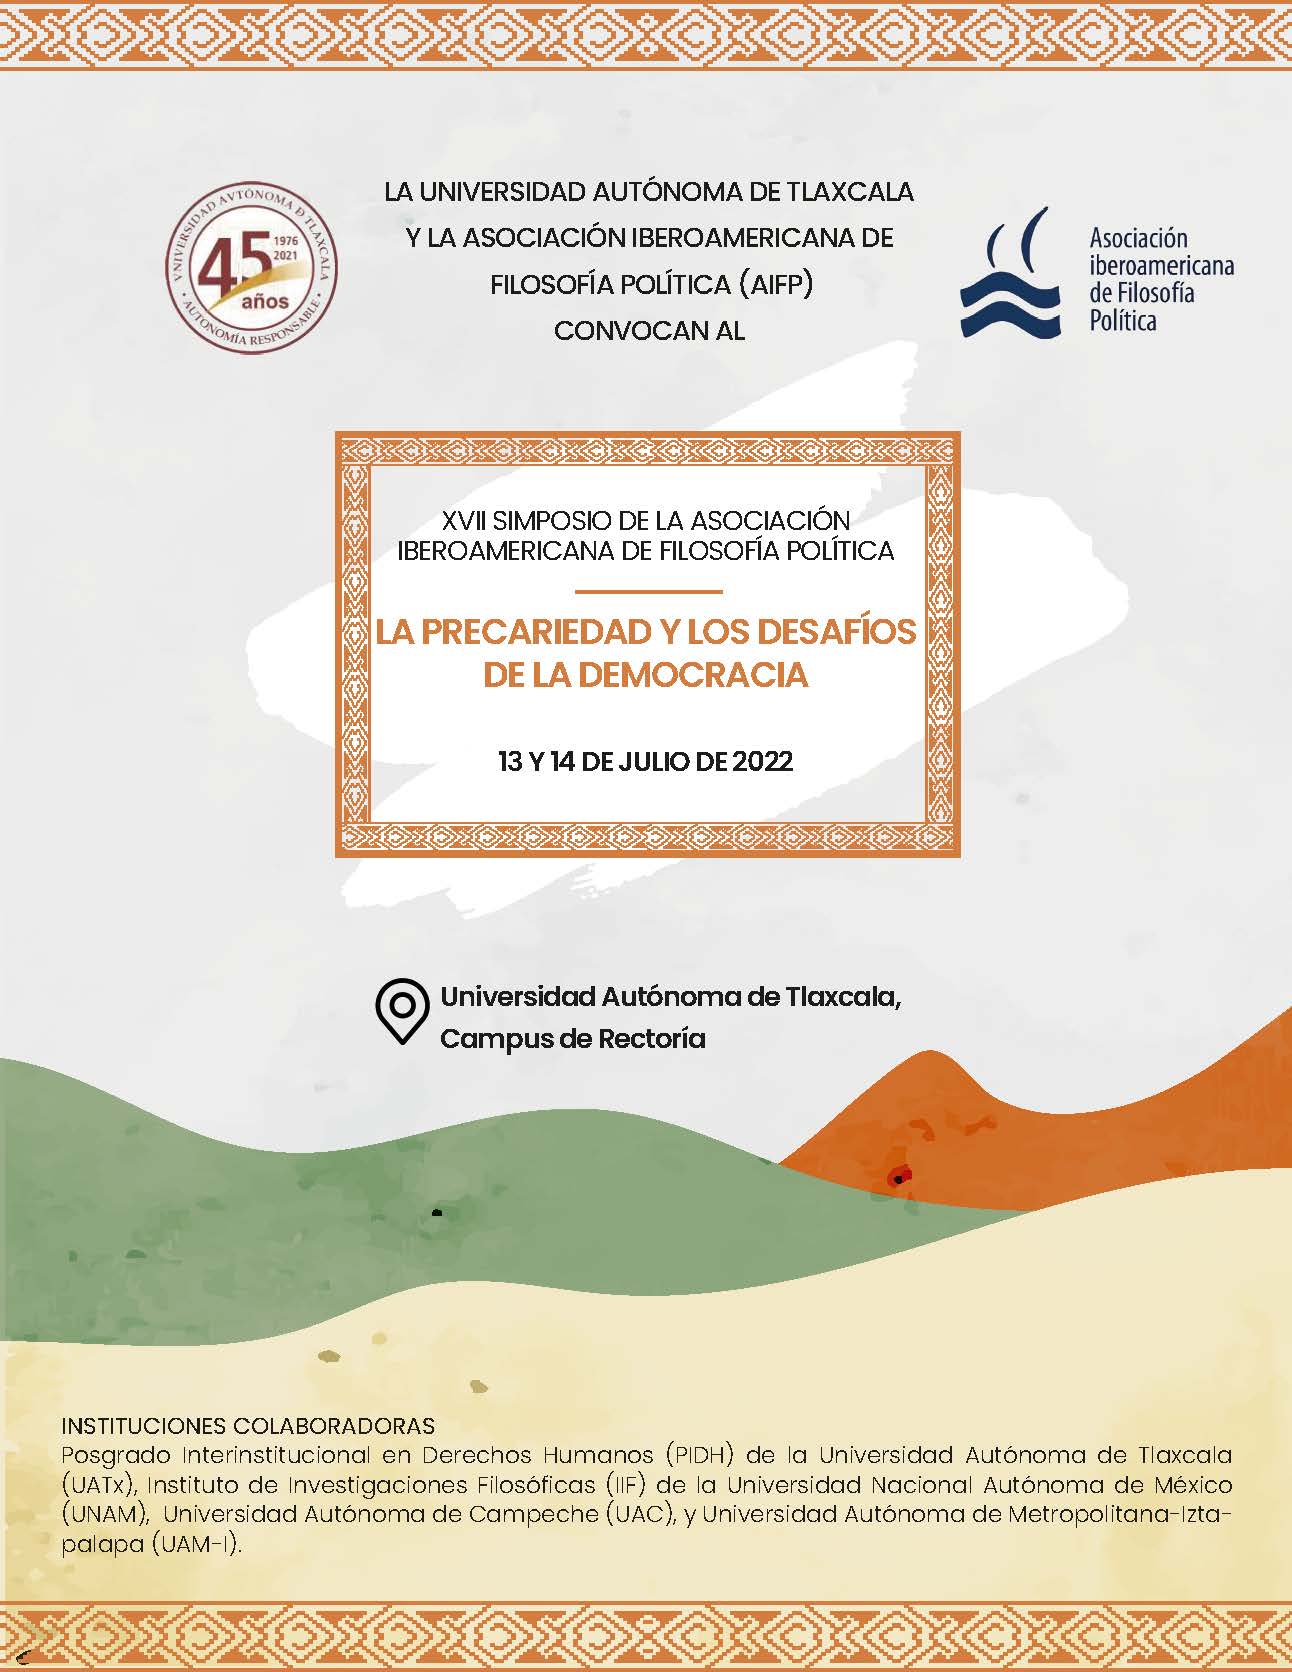 XVII Simposio de la Asociación Iberoamericana de Filosofía Política: la precariedad y los Desafíos de la Democracia, Universidad Autónoma de Tlaxcala - México